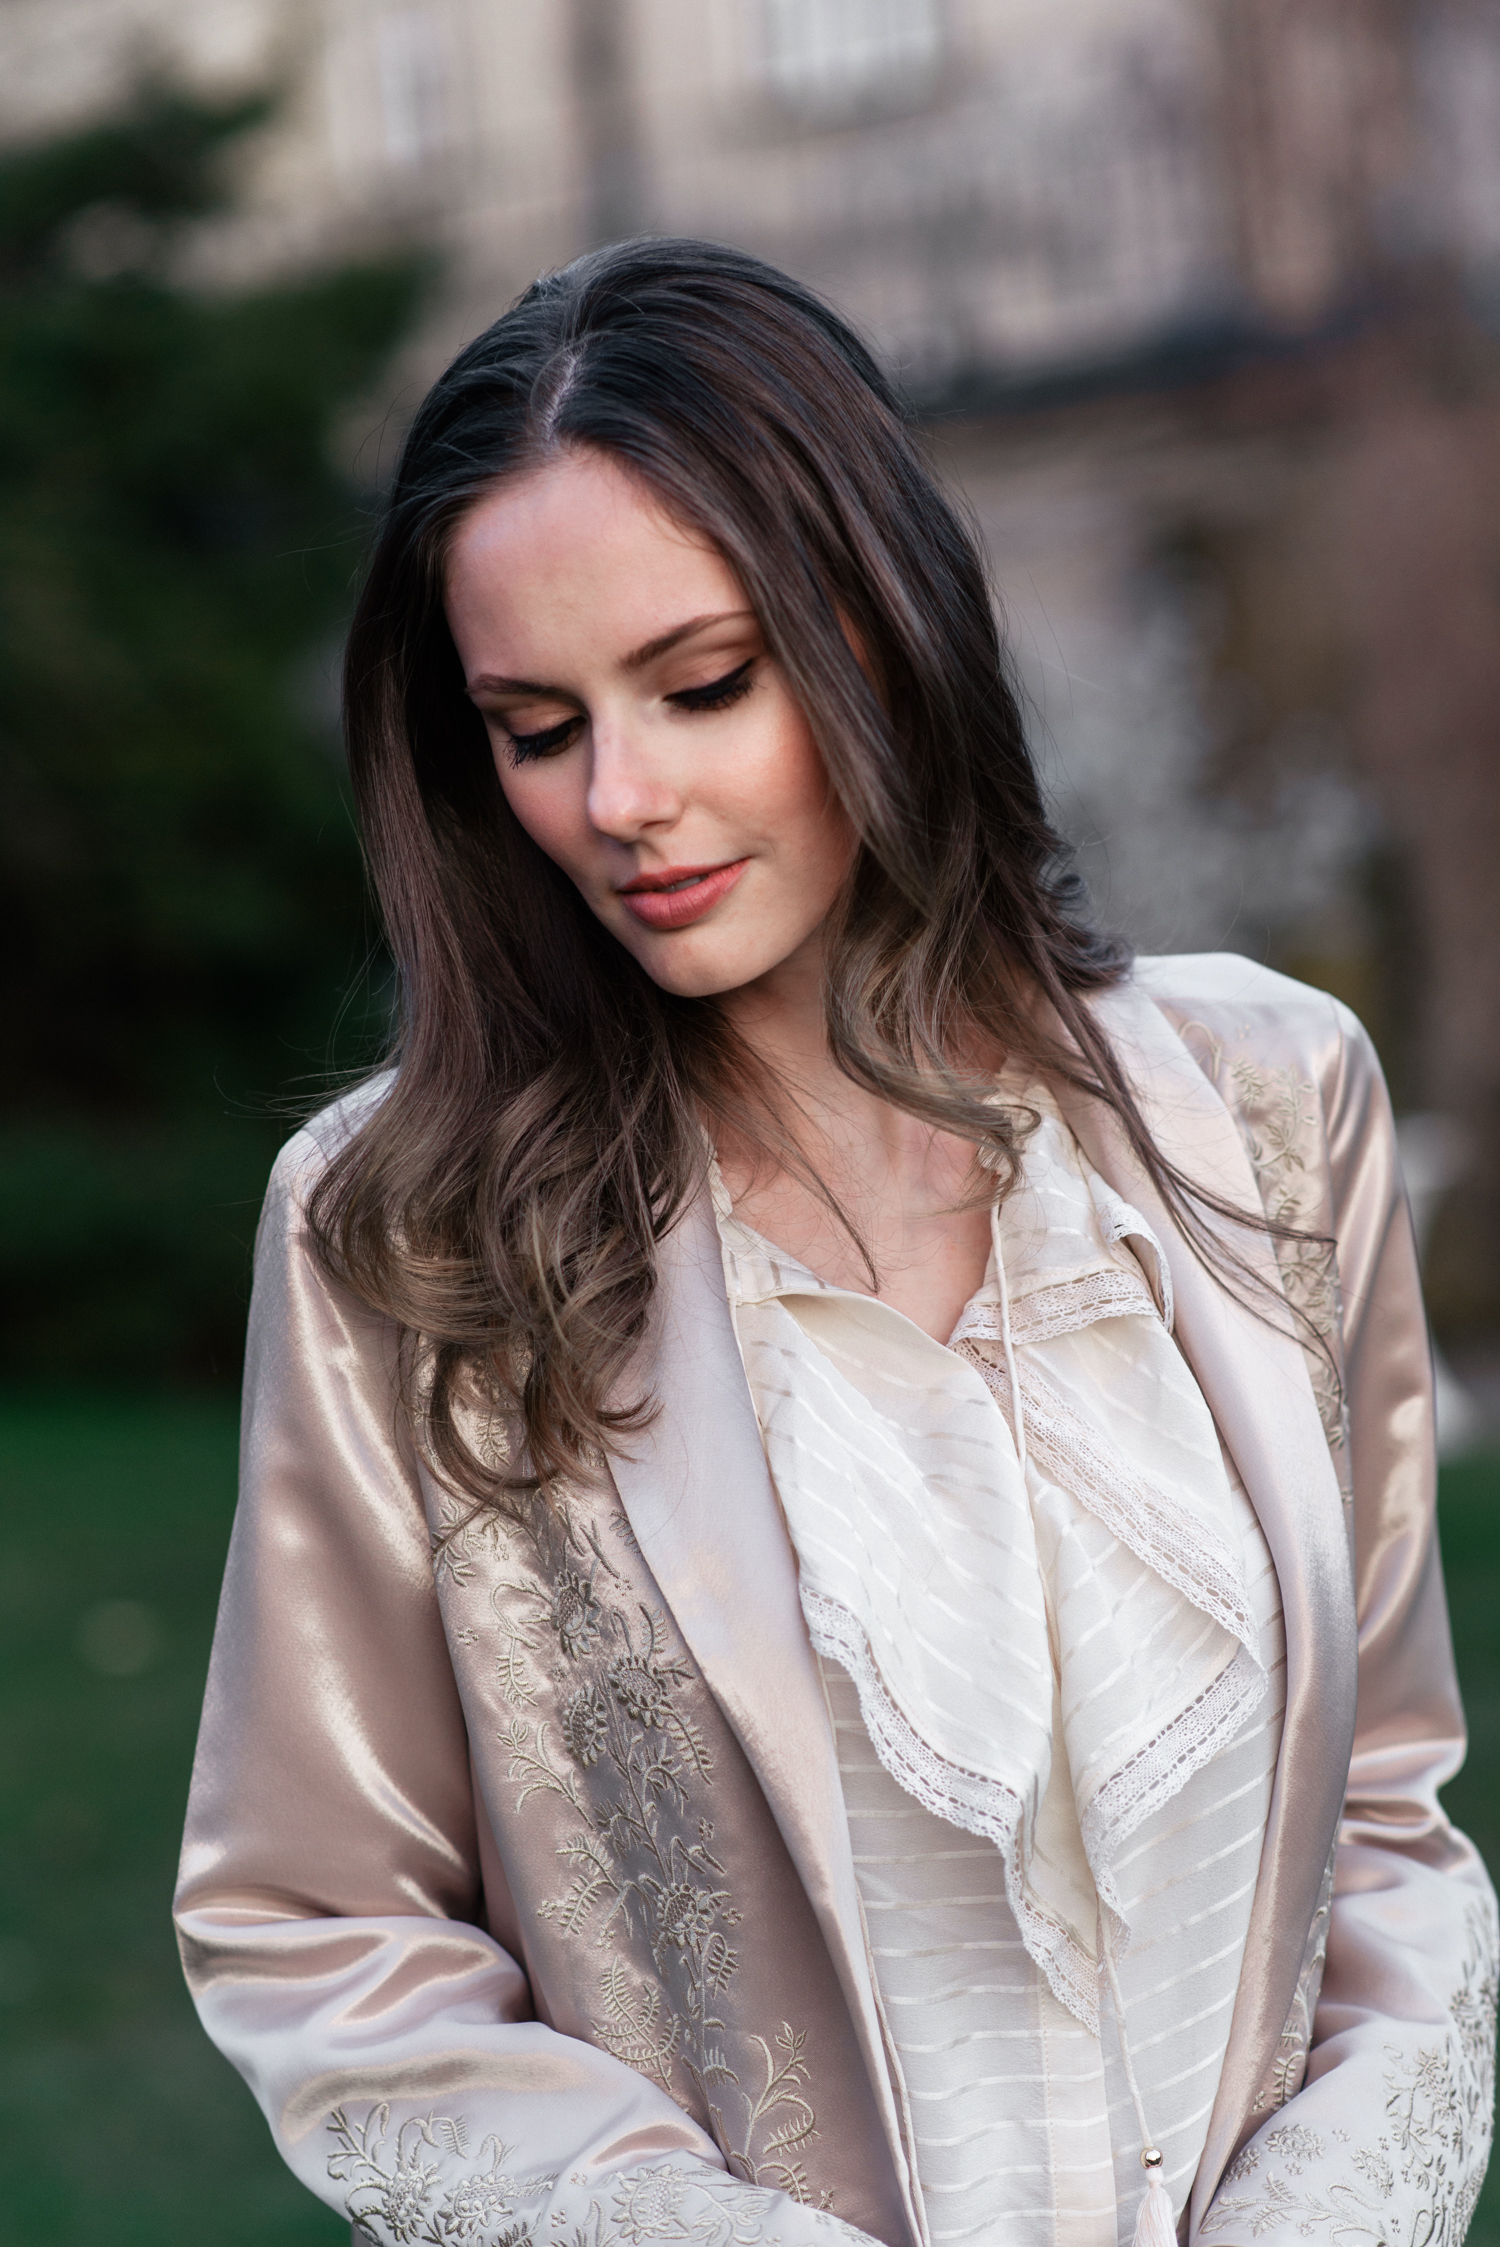 Alyssa Campanella of The A List blog wears the Maryella coat from Paige denim at the romantic Irish castle Cabra Castle in Ireland